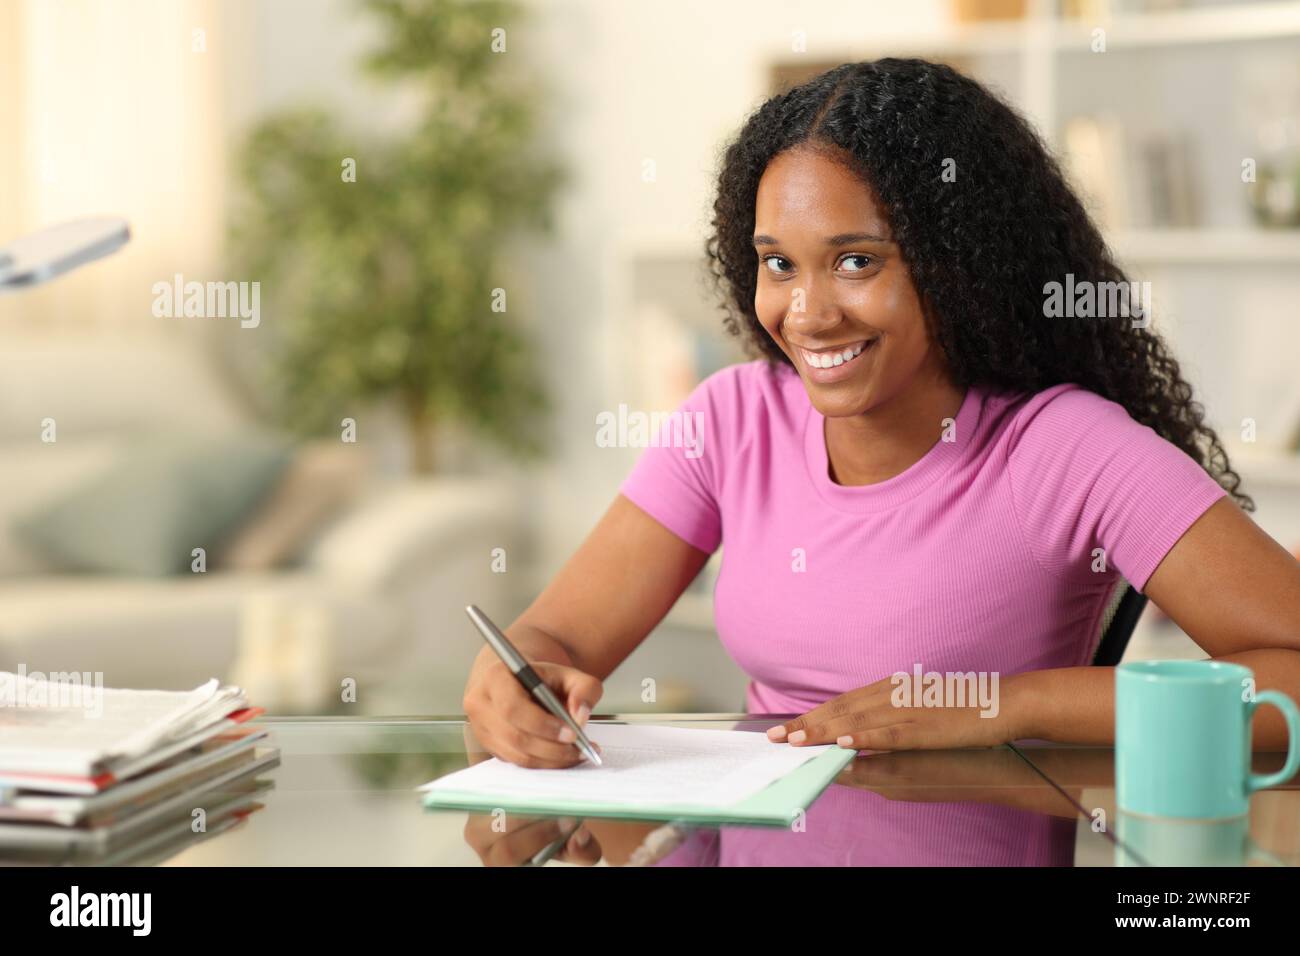 Glückliche schwarze Frau, die einen Vertrag unterschreibt oder ein Formular ausfüllt, sieht dich zu Hause an Stockfoto